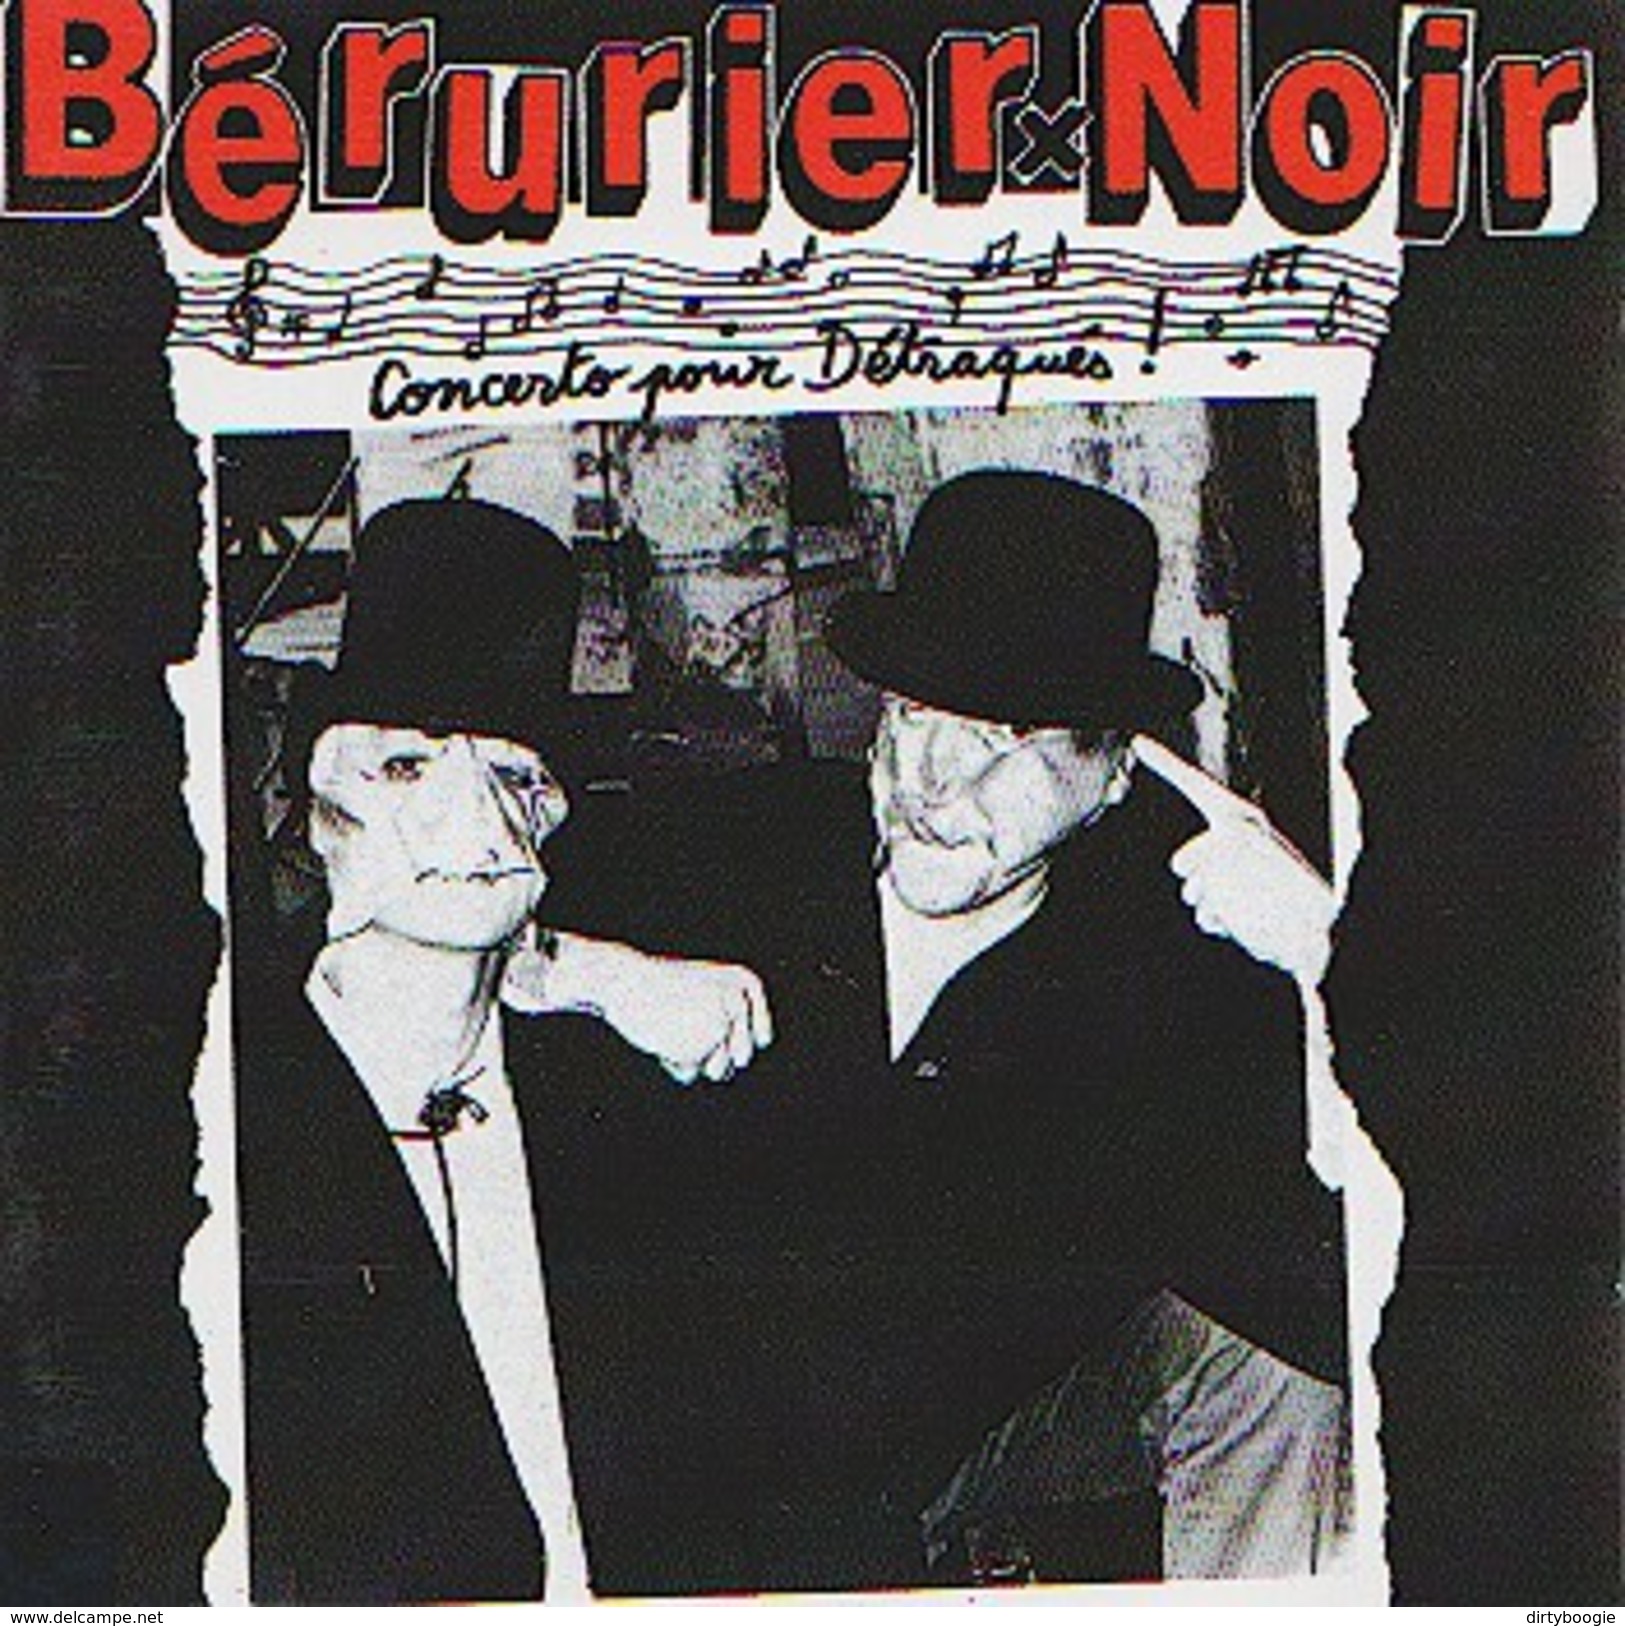 BERURIER NOIR - Concerto Pour Détraqués - CD - FOLKLORE DE LA ZONE MONDIALE - Punk